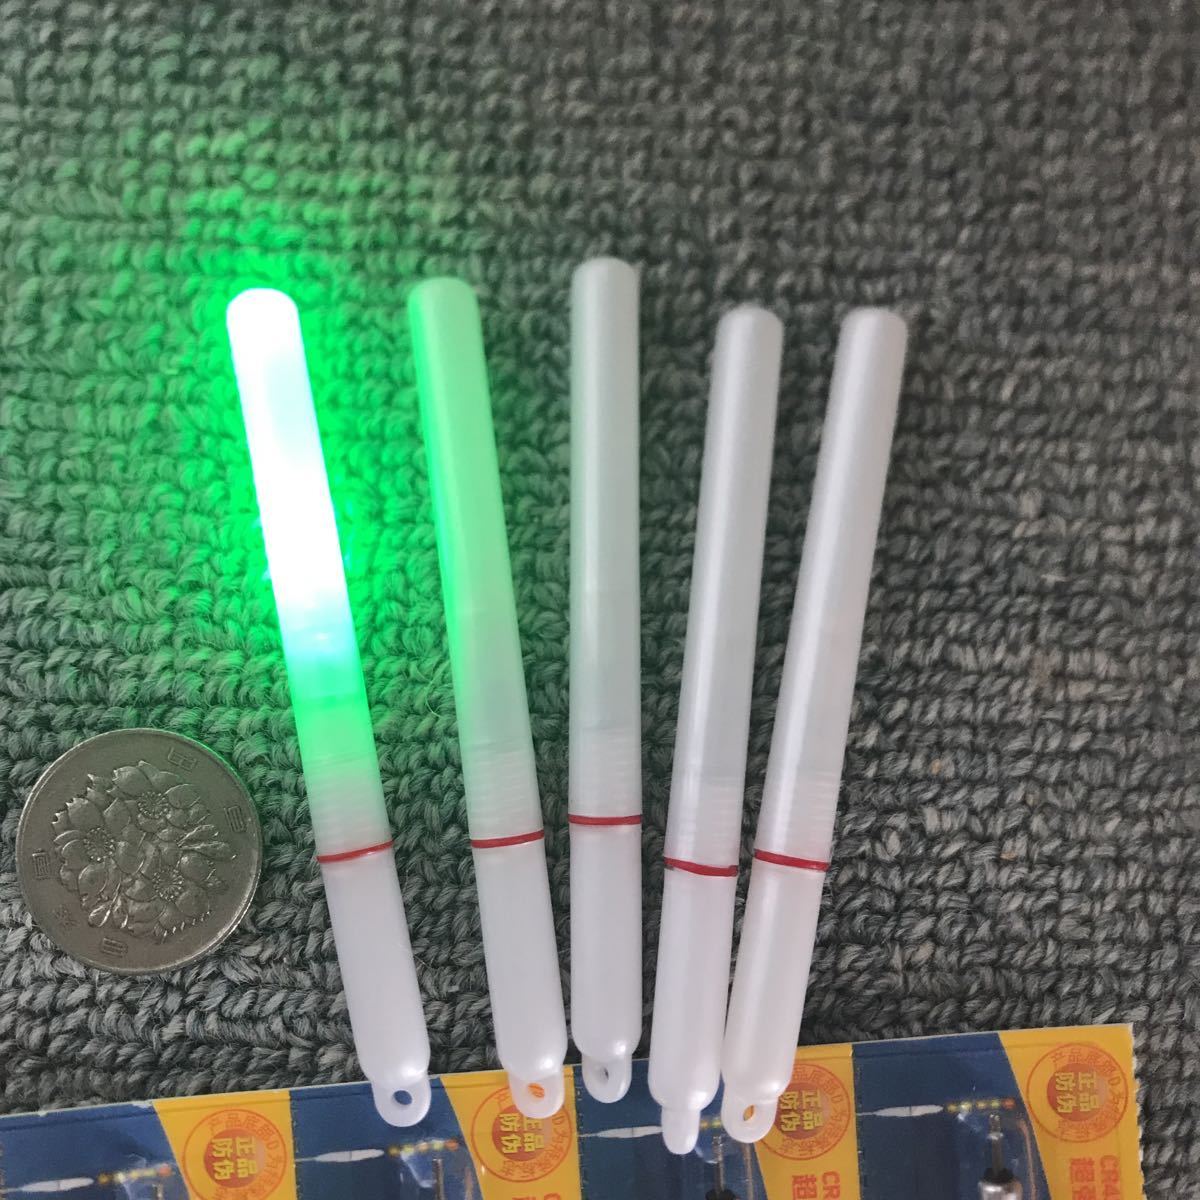 LEDスティックライト 電気ケミホタル50サイズオリジナル長さ 緑発光 本体5本 電池5本無料 新品入荷の画像1